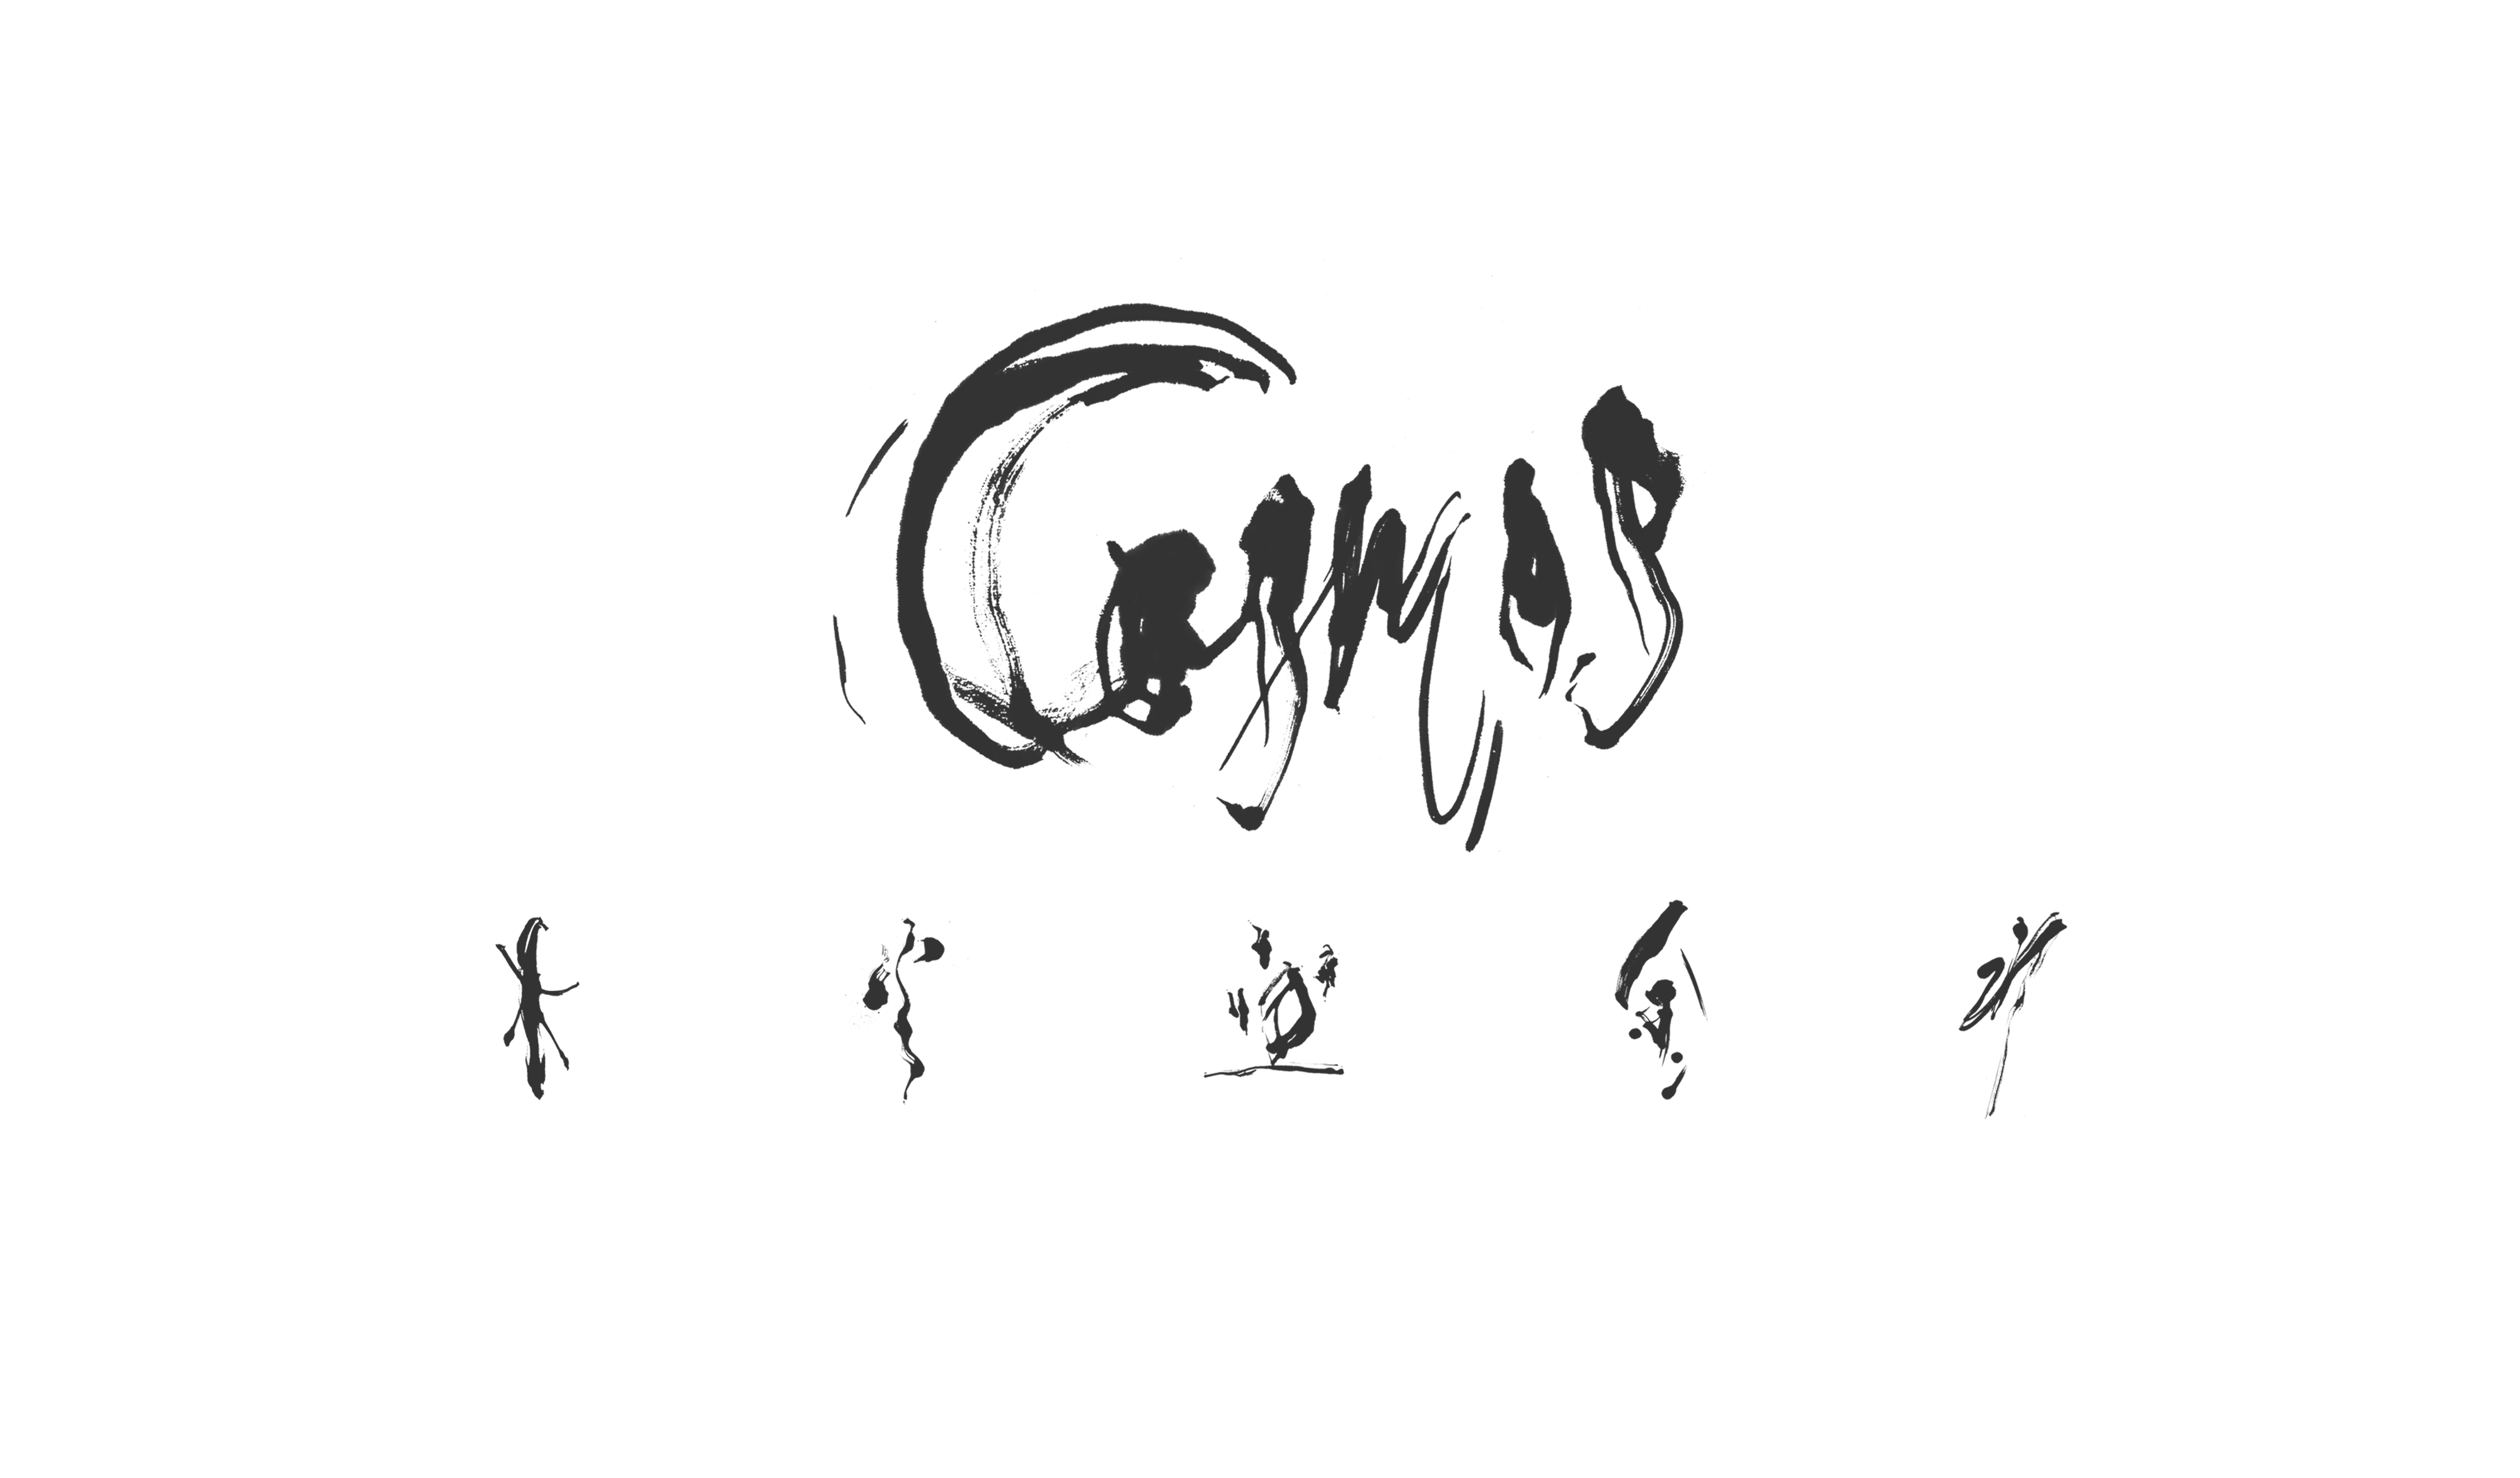 cosmos_logo